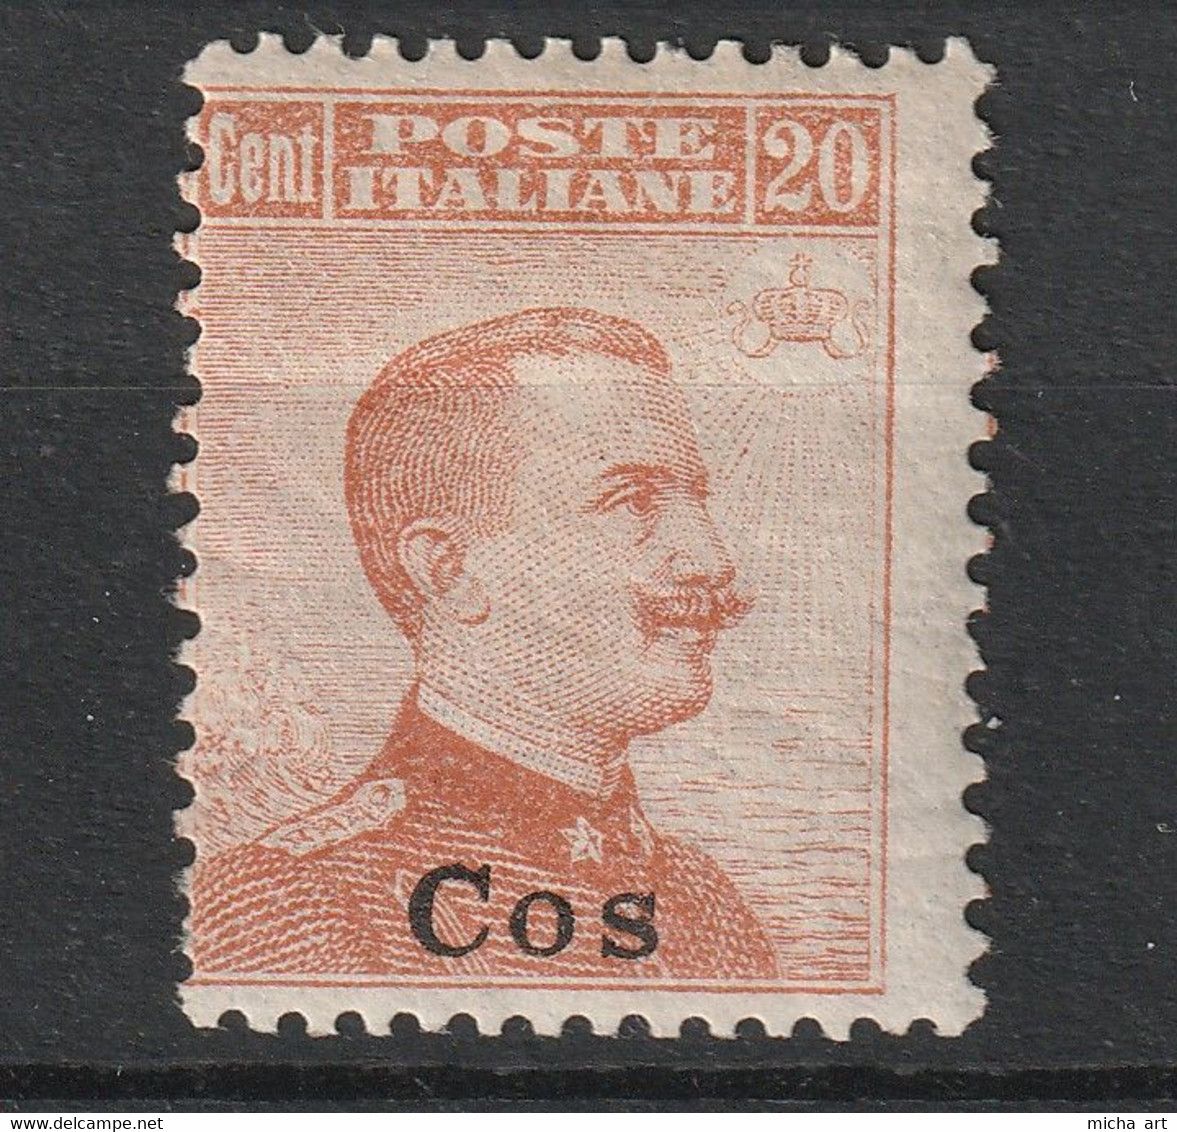 Italian Colonies 1916 Greece Aegean Islands Egeo Coo Cos No 9 No Watermark (senza Filigrana)  MH (B376-58) - Egée (Coo)